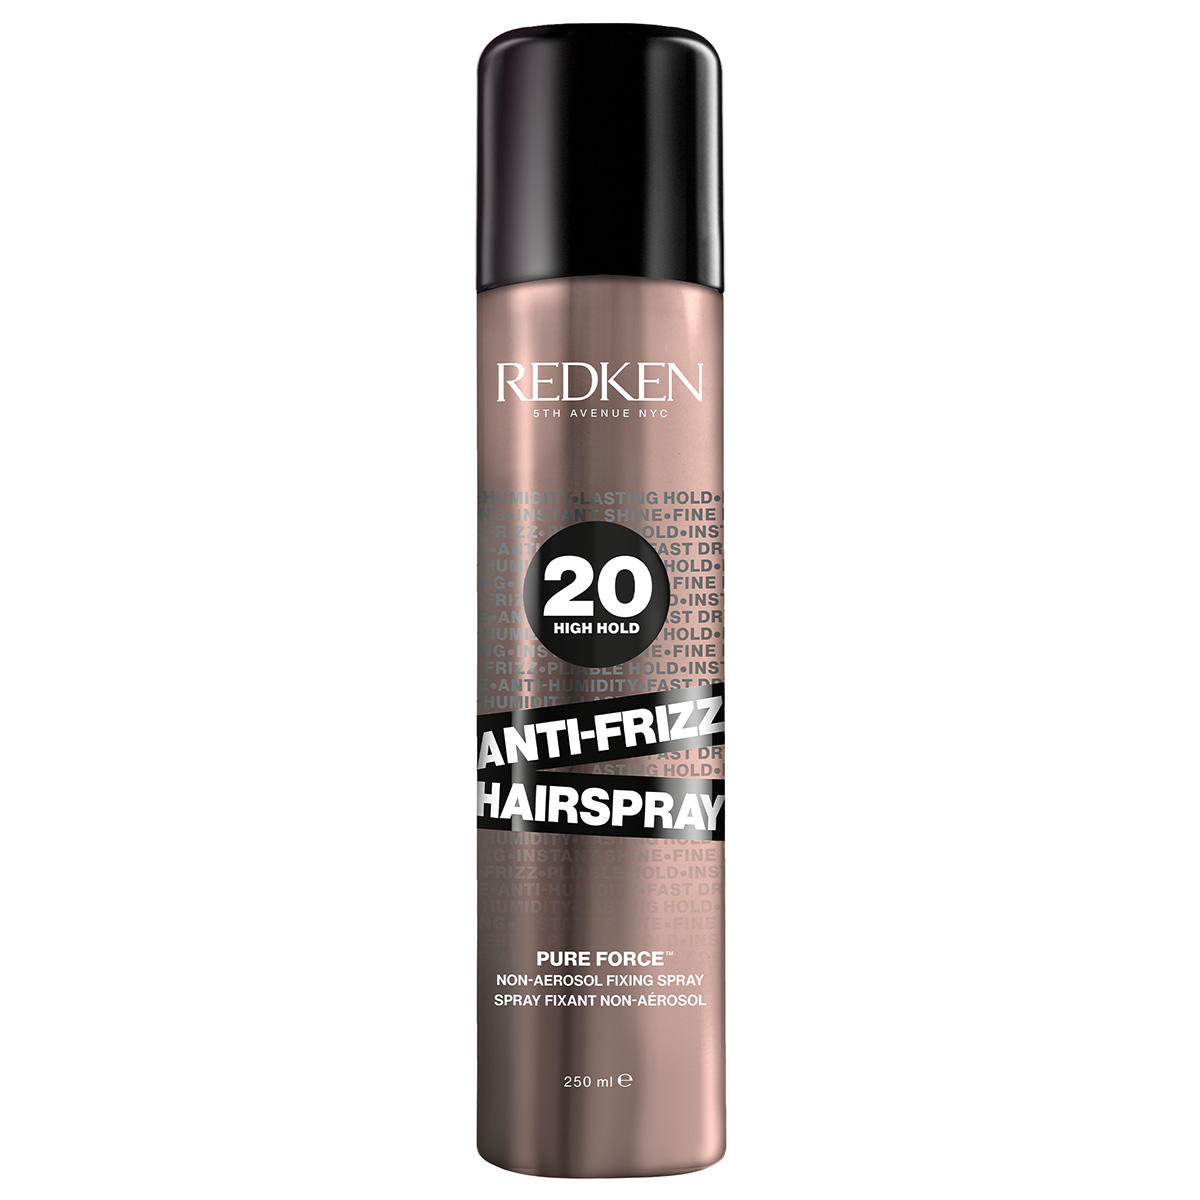 Redken Anti-frizz hair spray mittlerer Halt 250 ml - 1